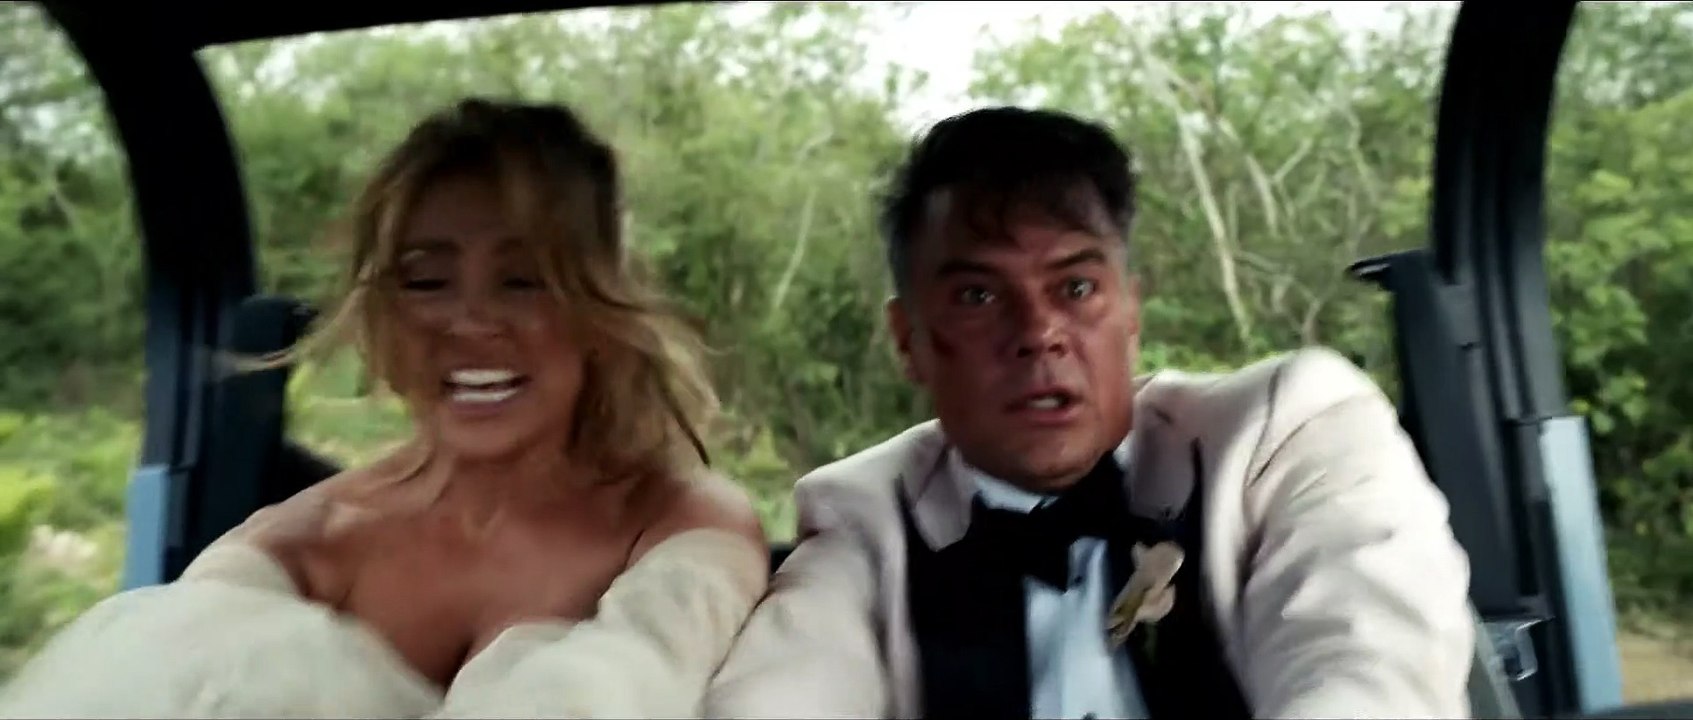 SHOTGUN WEDDING Film - Clip und Trailer